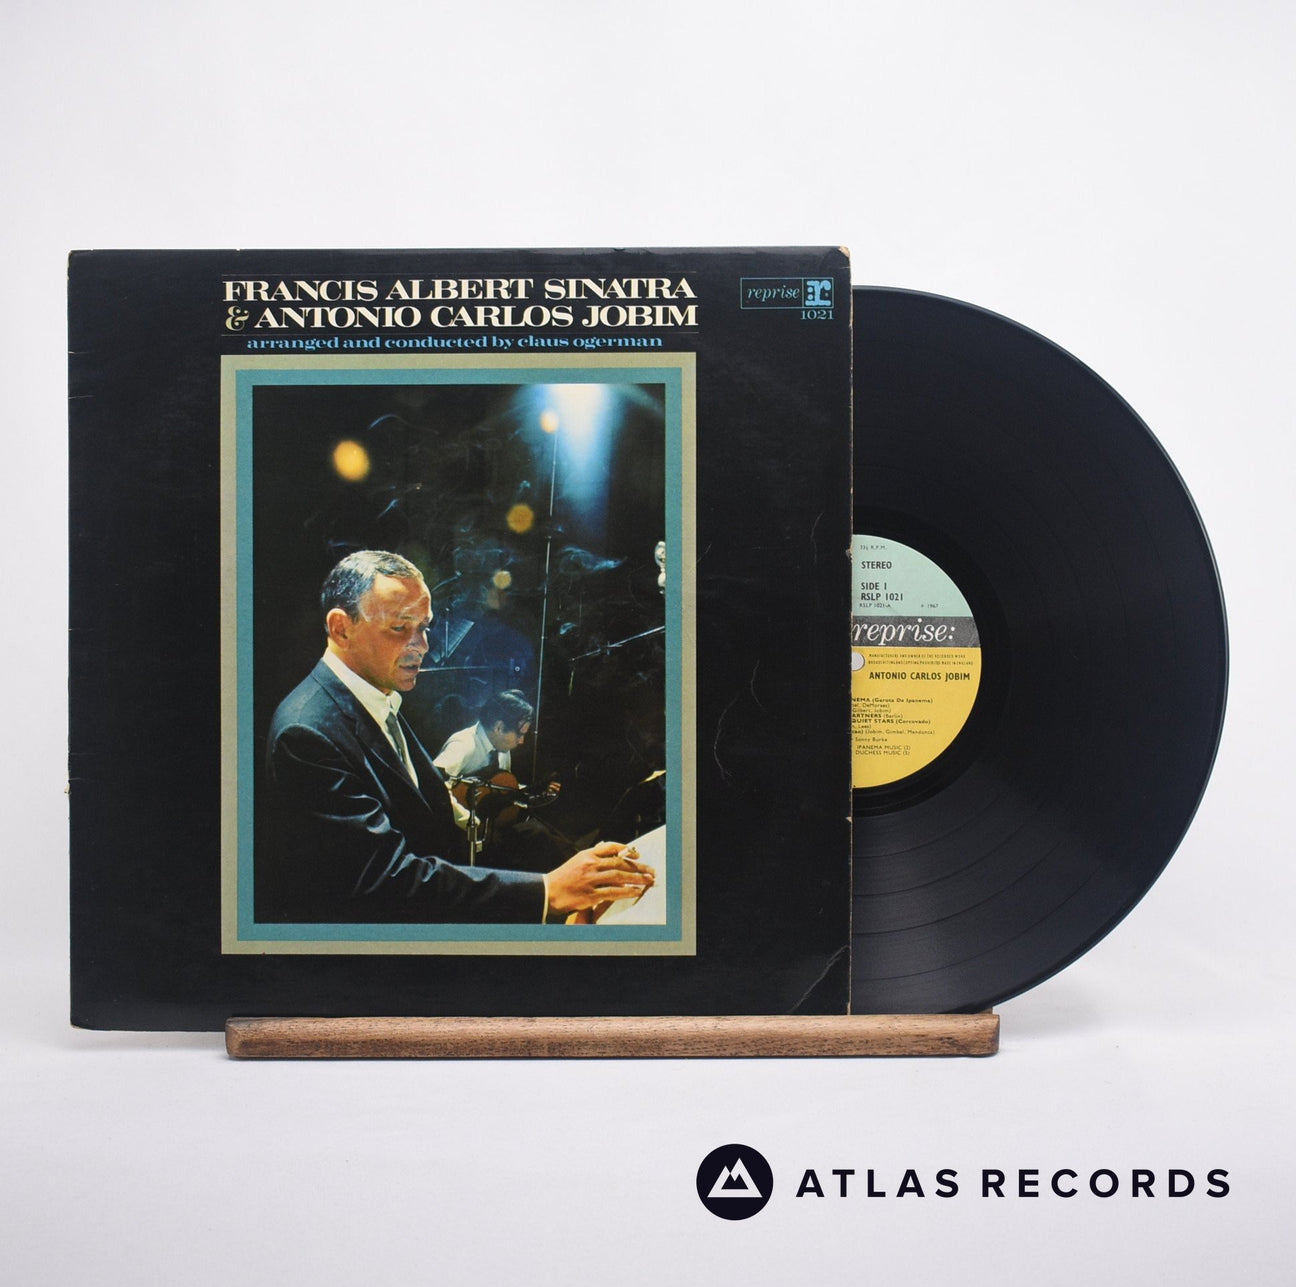 Frank Sinatra Francis Albert Sinatra & Antonio Carlos Jobim LP Vinyl Record - Front Cover & Record